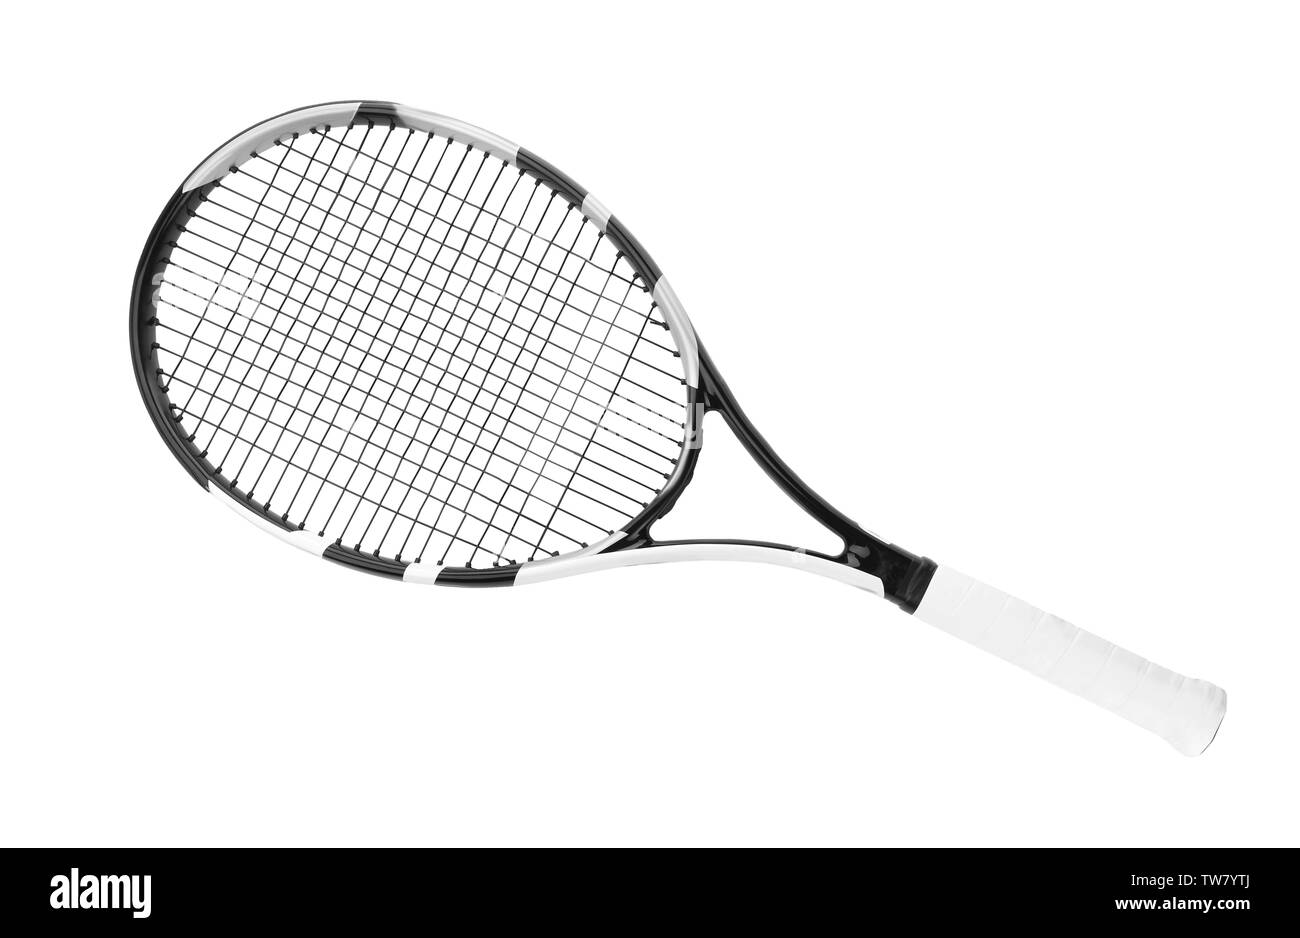 Raquette de tennis sur fond blanc Banque D'Images